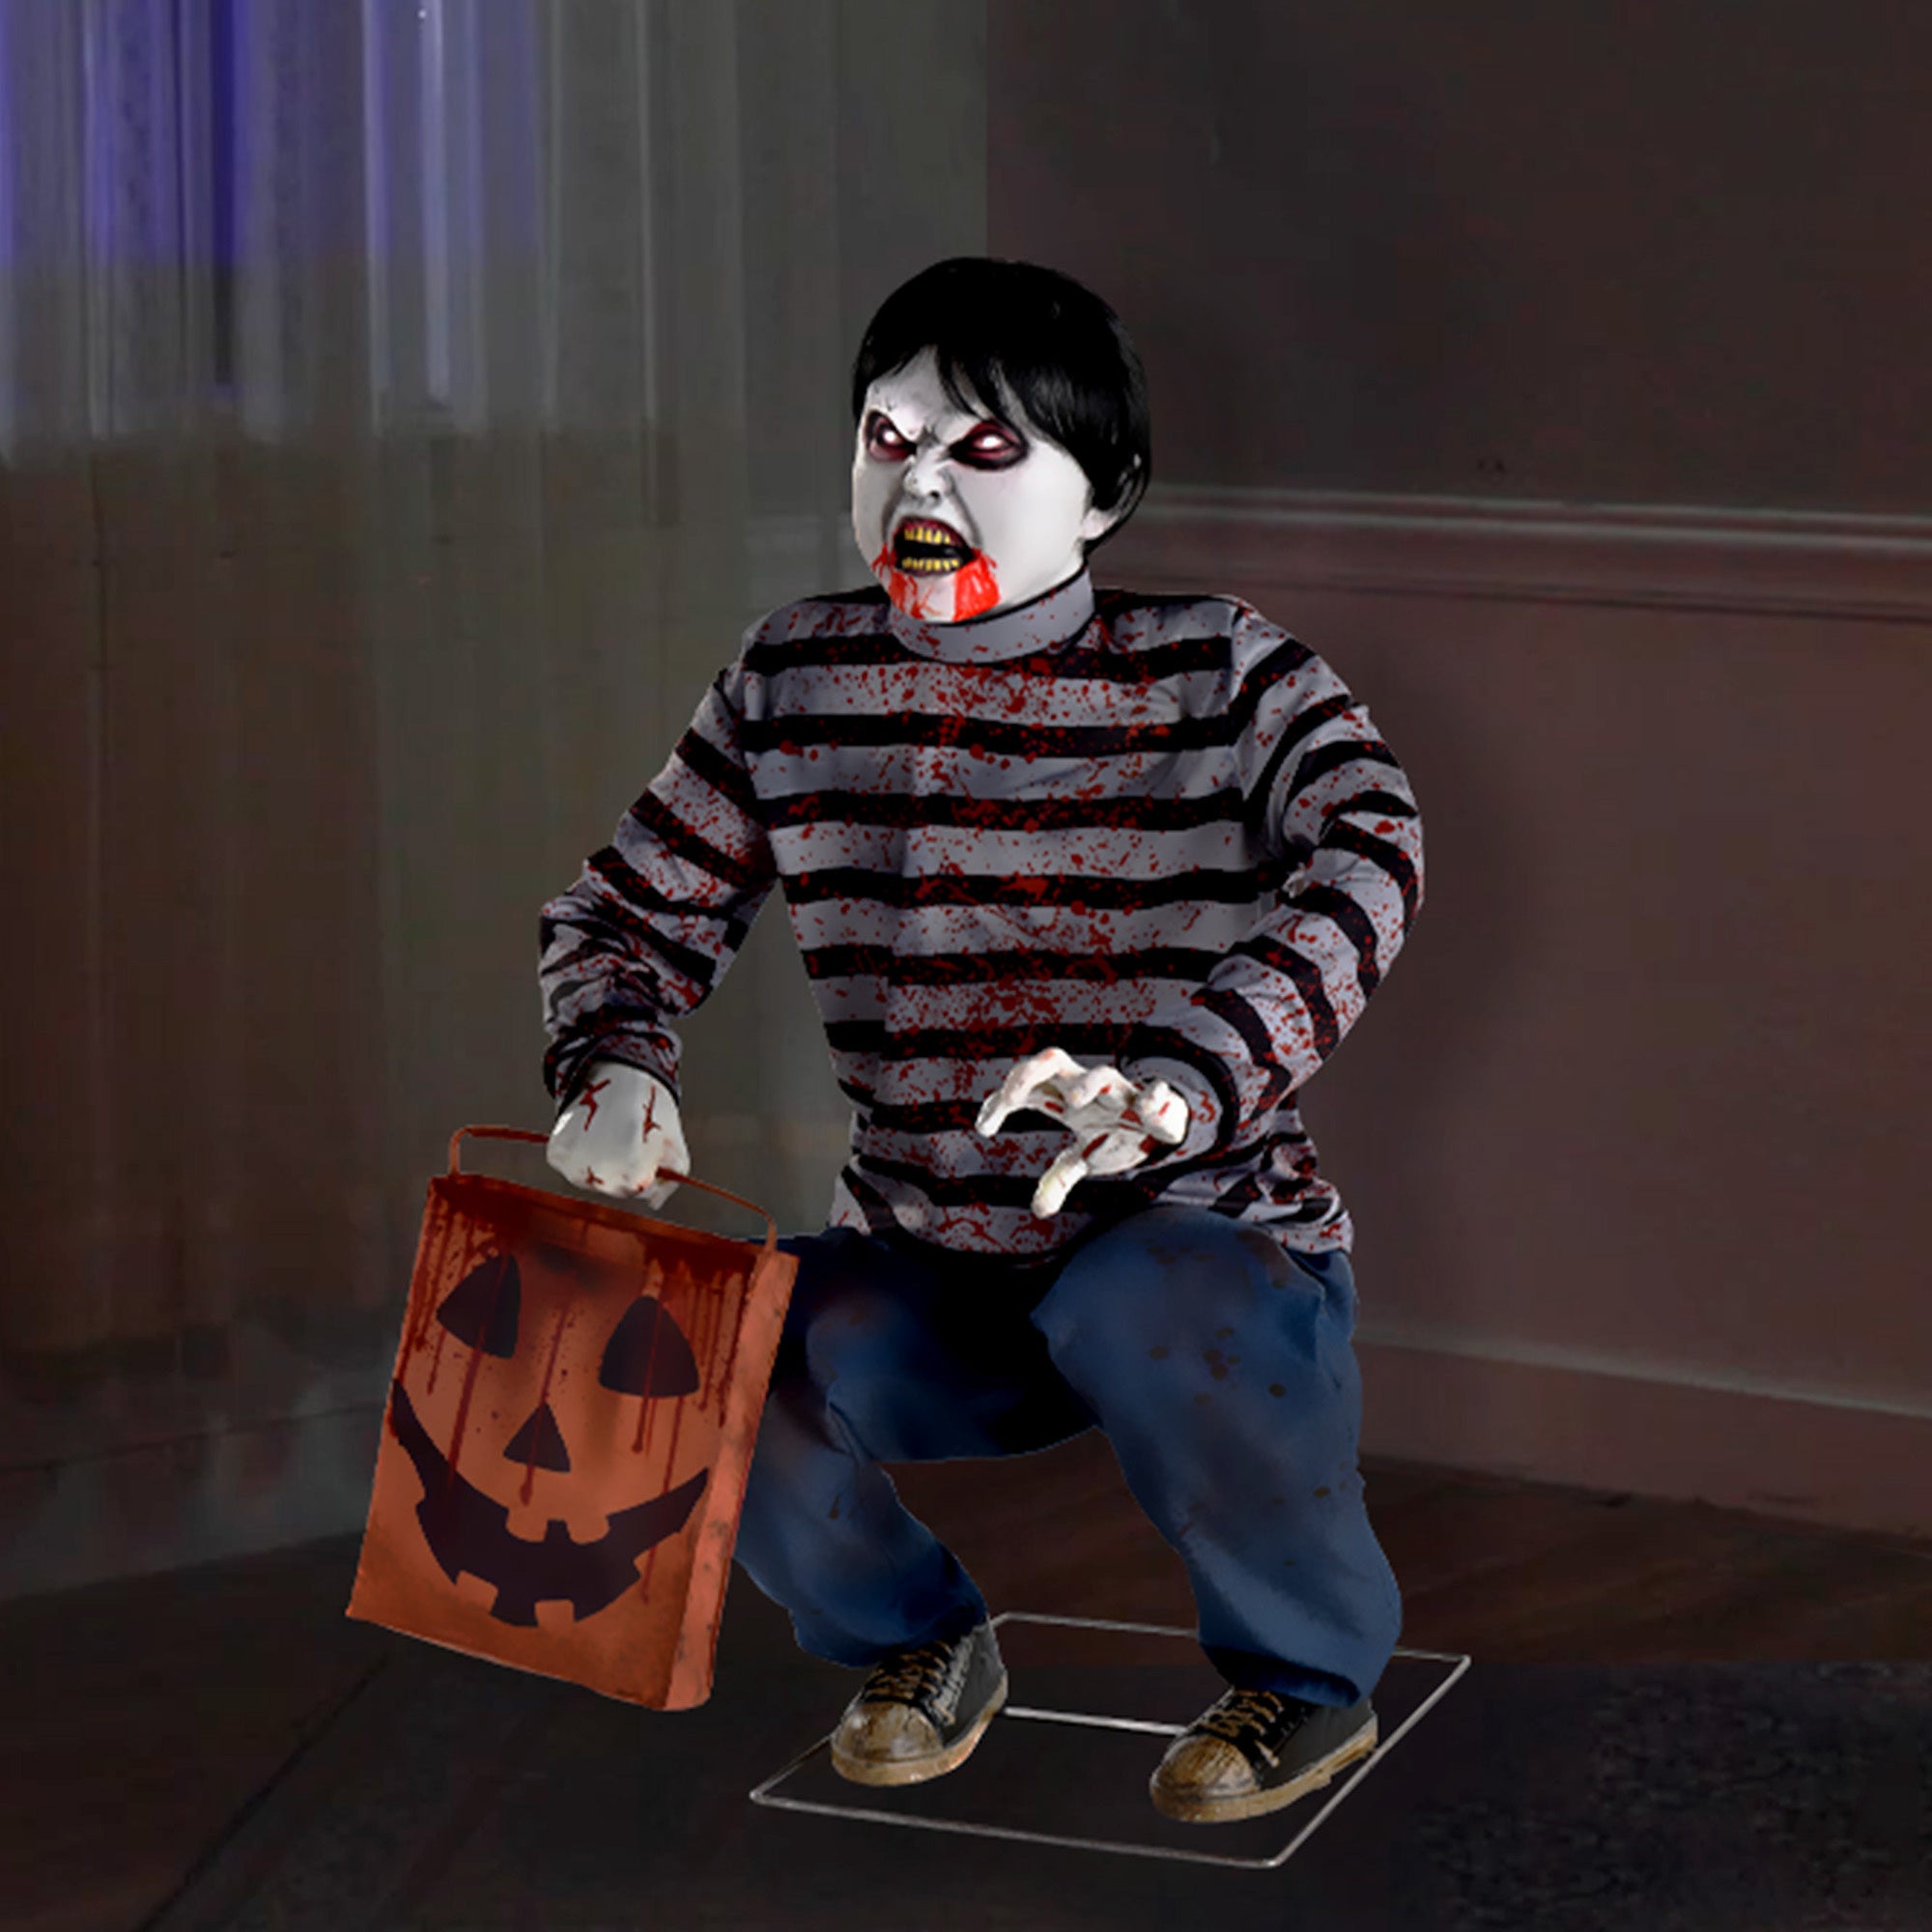 Animatronic Zombie Child, 36 Inches, 1 Count